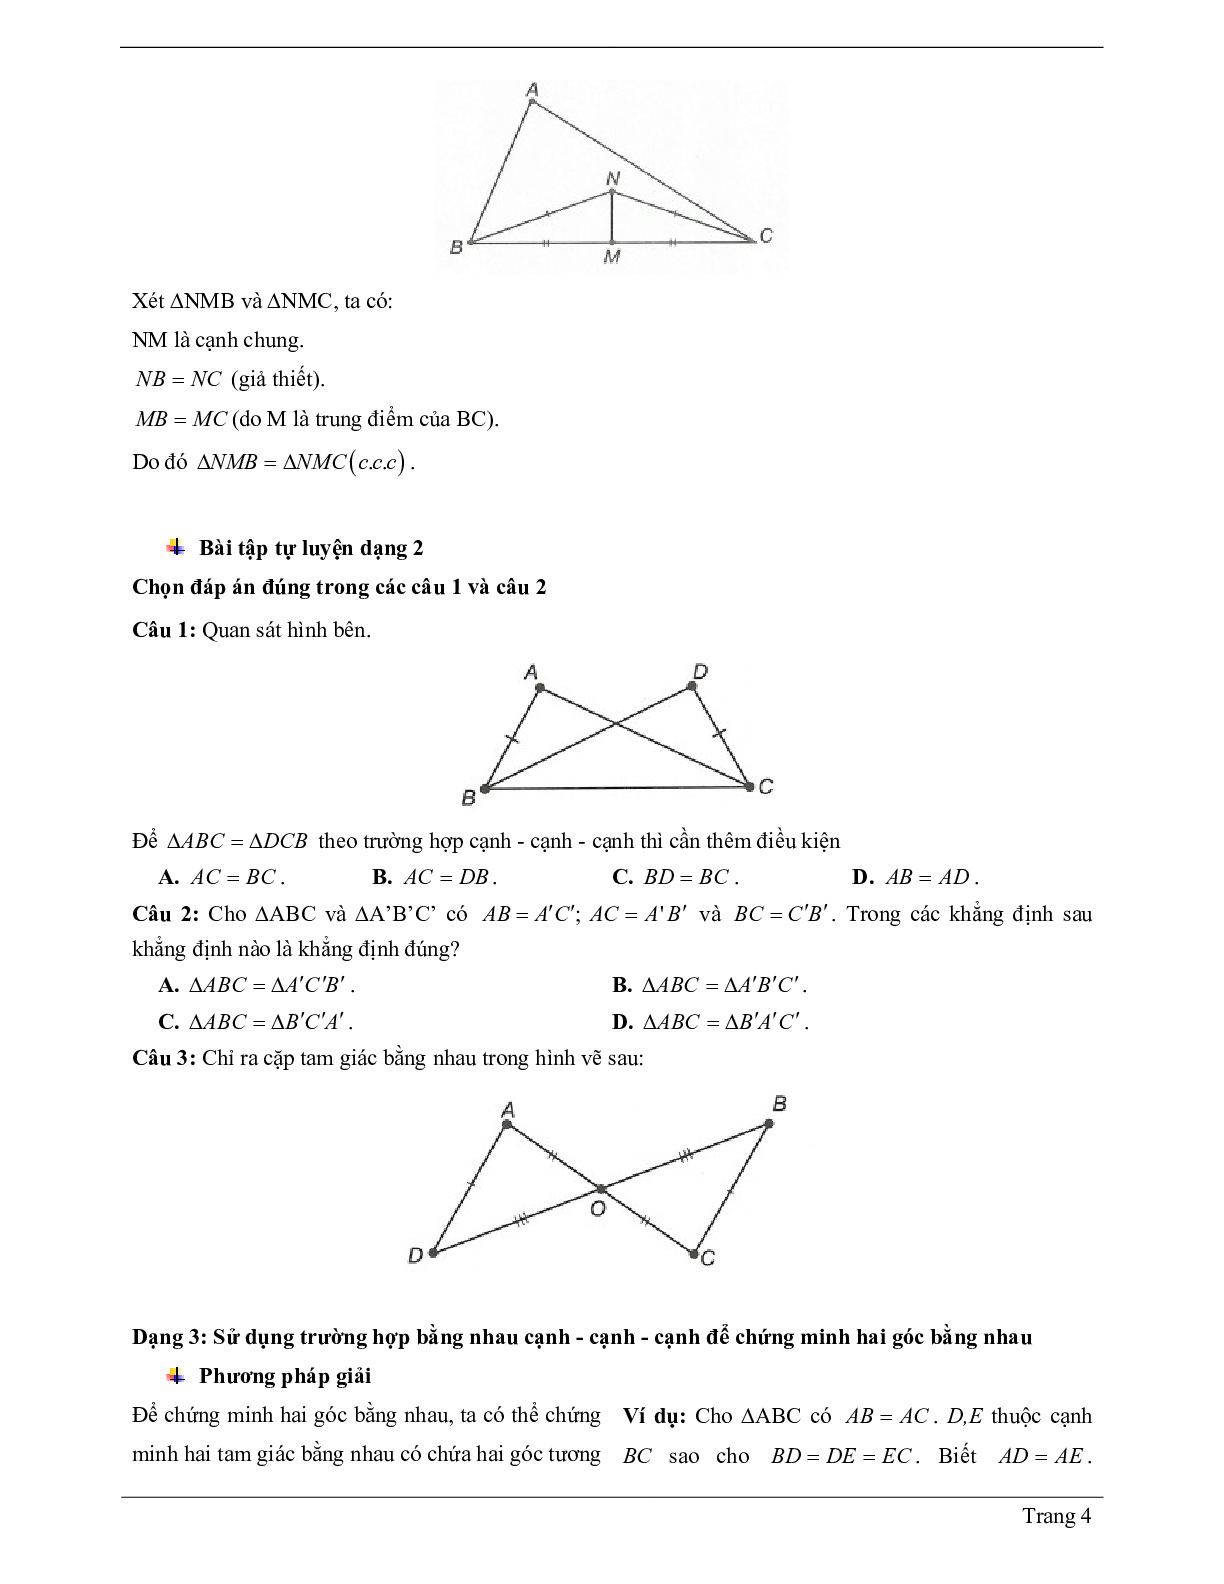 Lý thuyết Toán 7 có đáp án: Trường hợp bằng nhau thứ nhất của tam giác: cạnh - cạnh - canh (c.c.c) (trang 4)